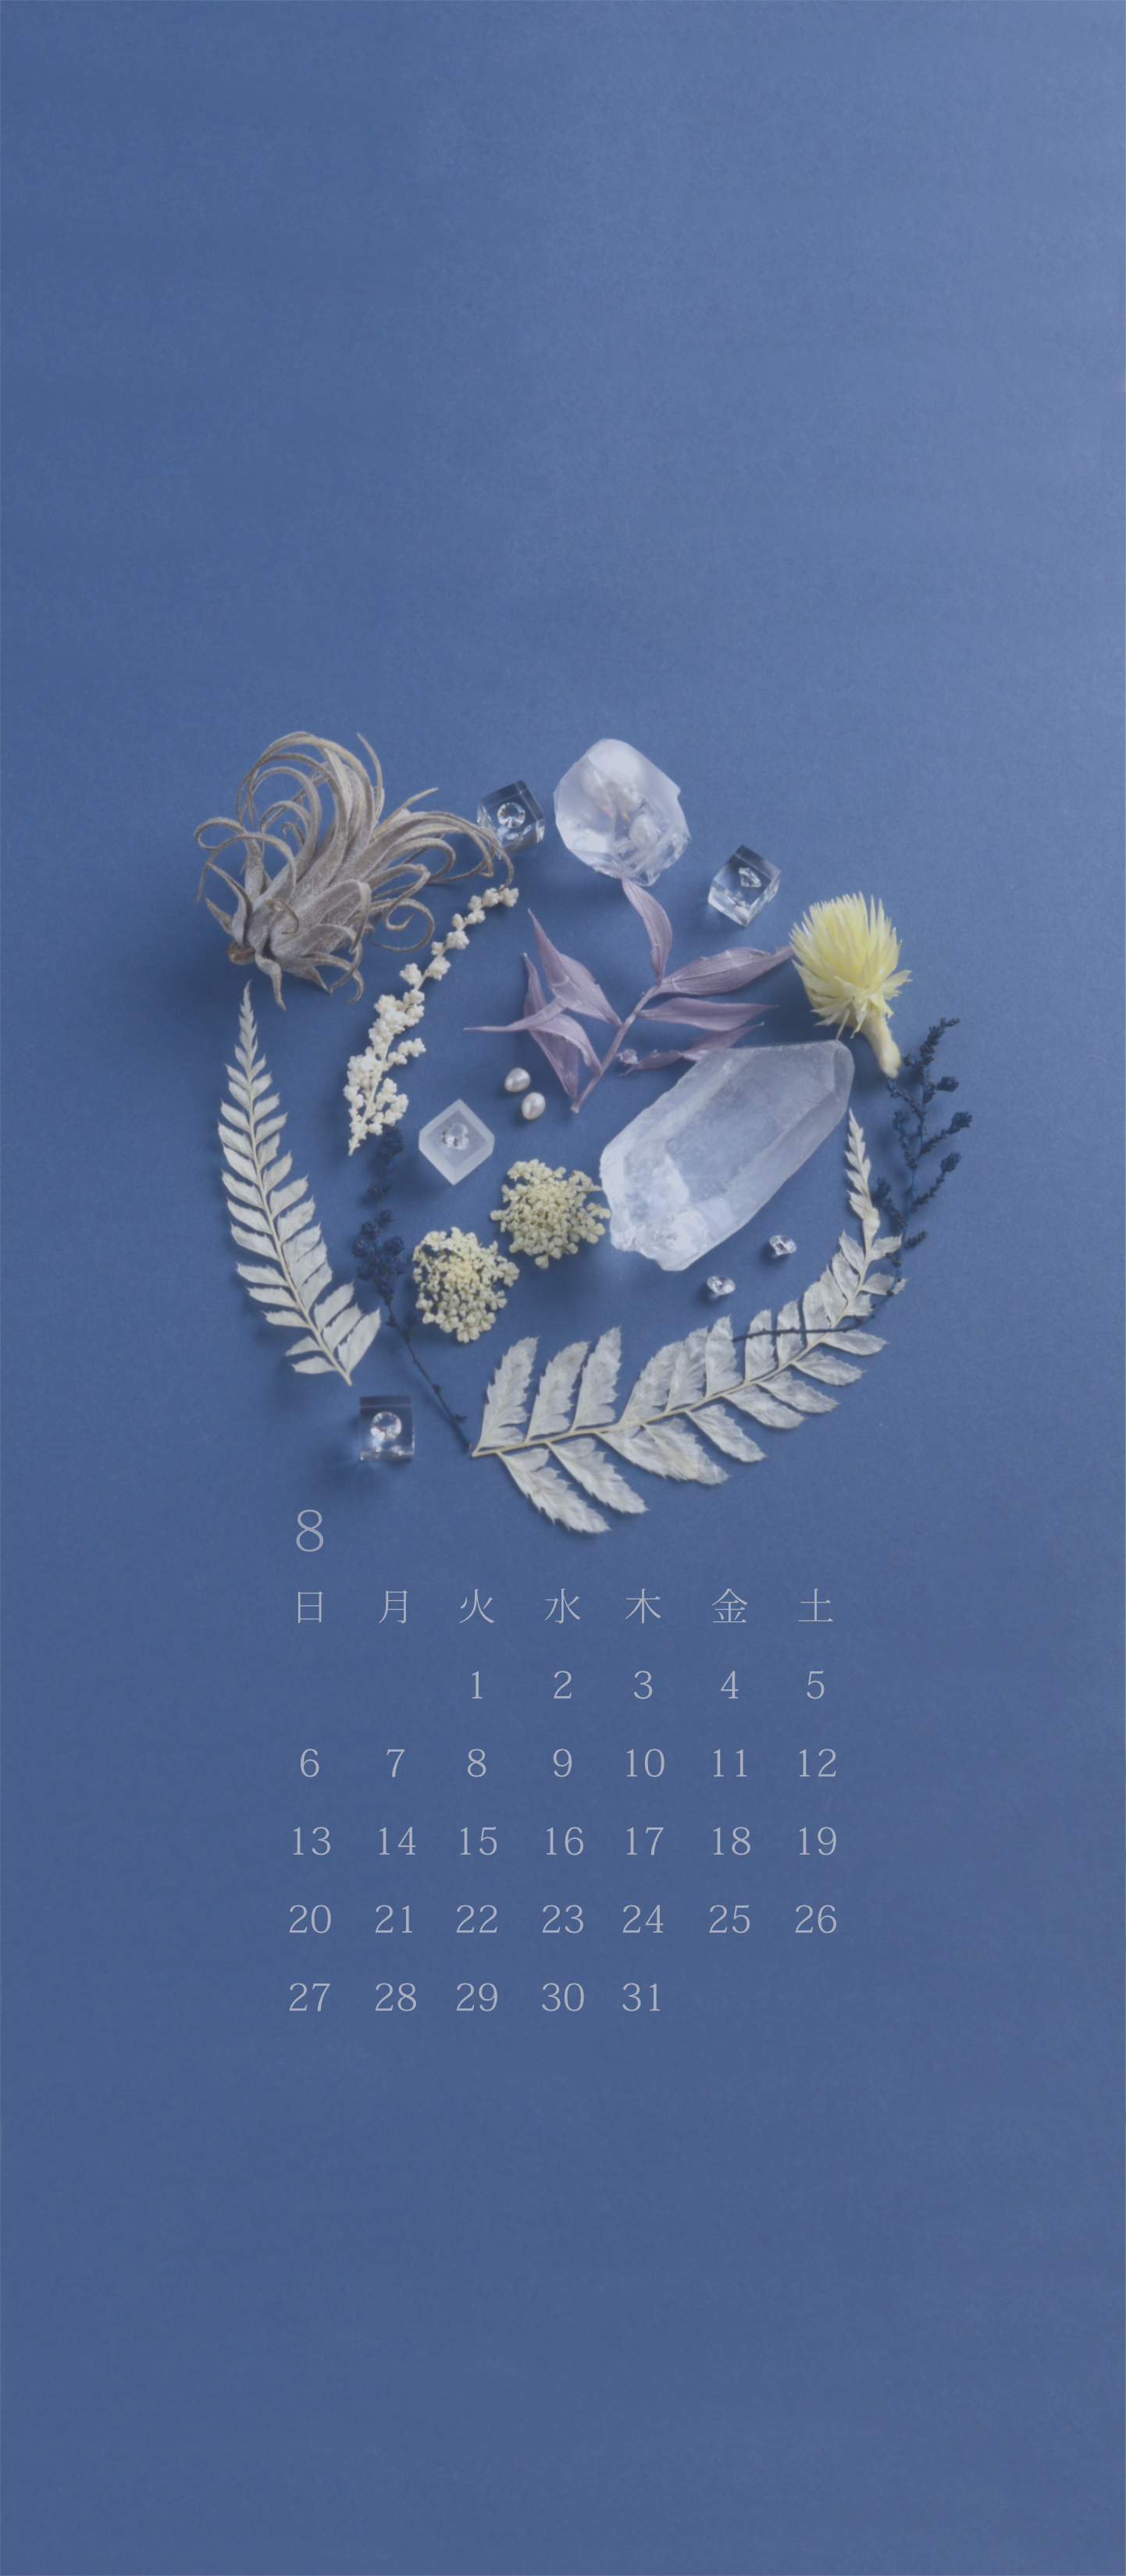 無料ロック画面カレンダー 「8月 夏疾風」